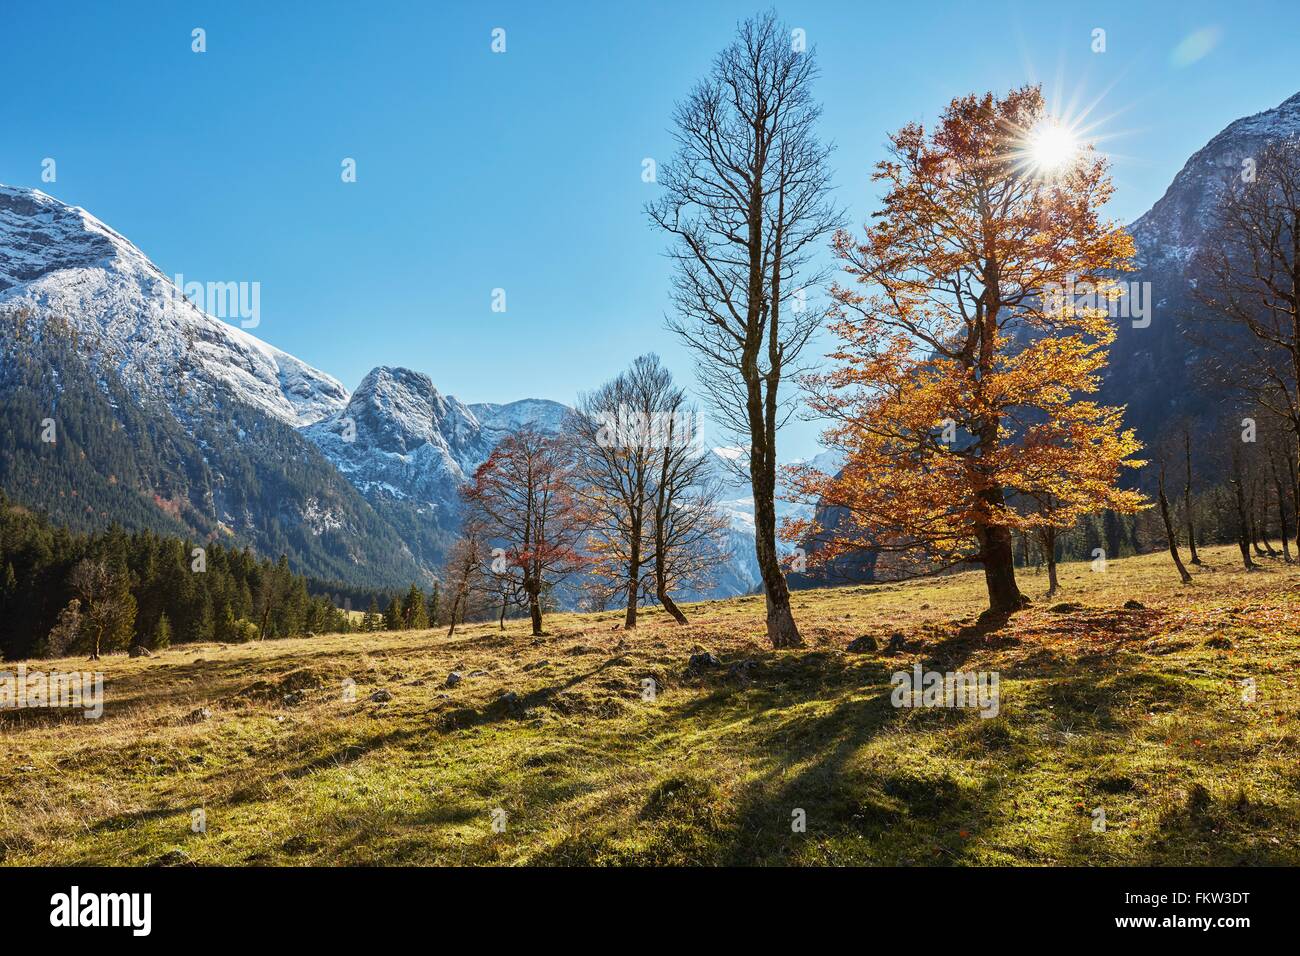 Paysage ensoleillé avec des montagnes enneigées, Hinterriss, Tyrol, Autriche Banque D'Images